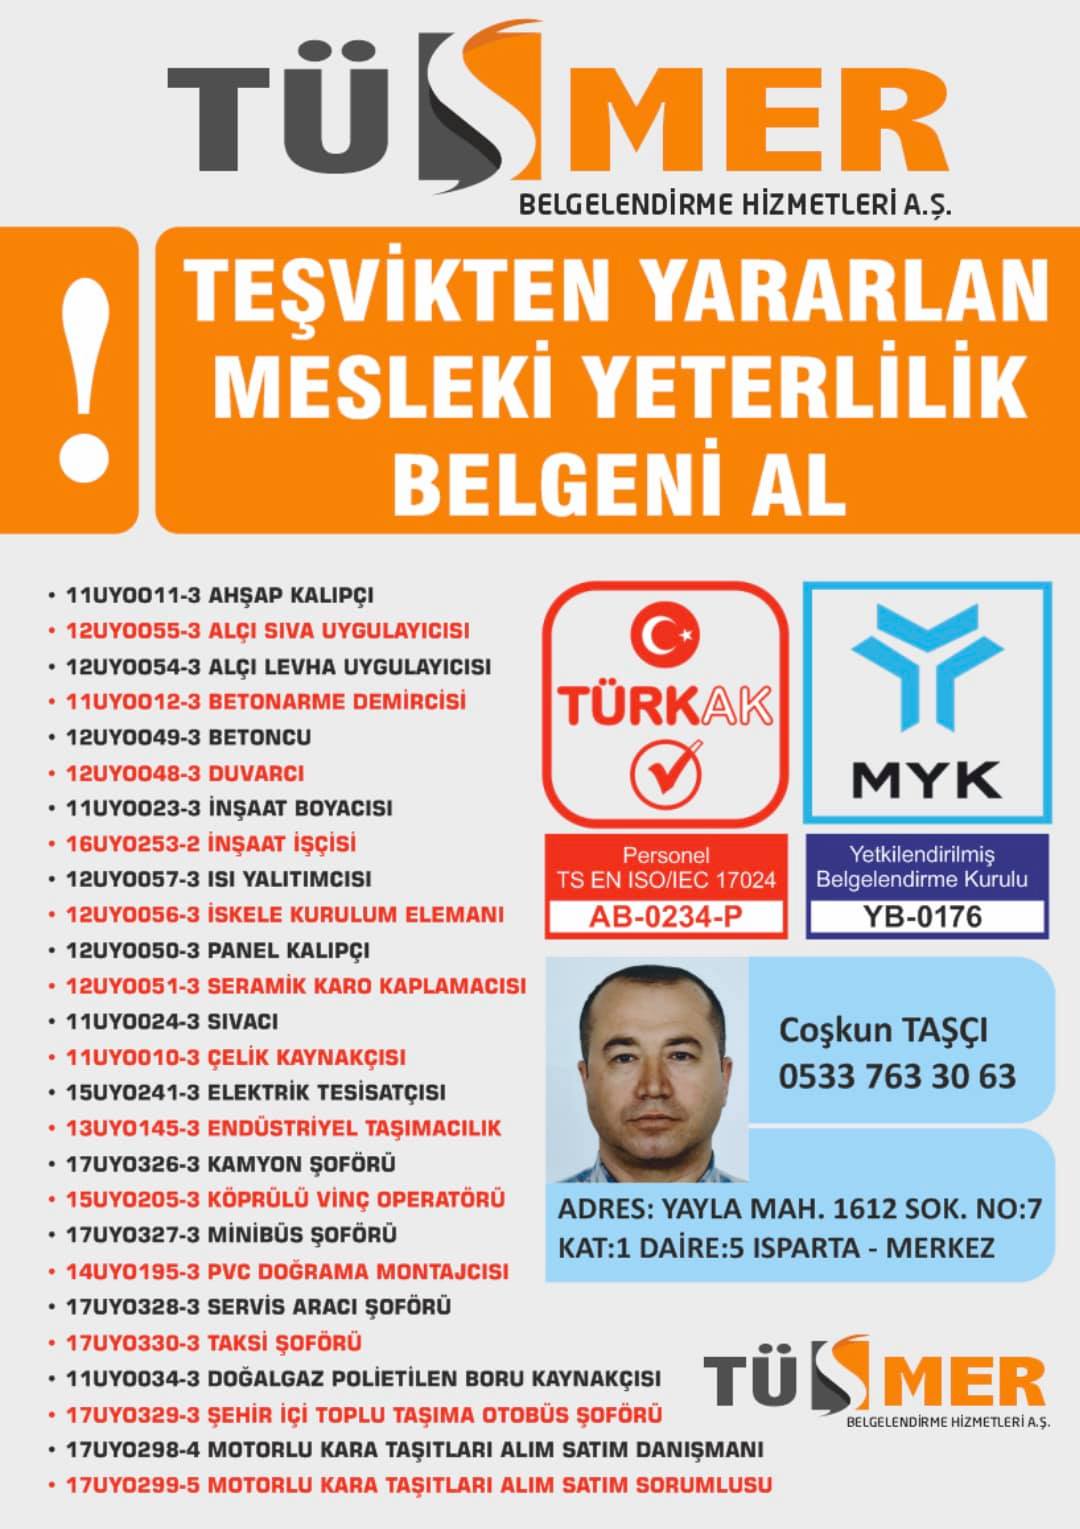 MYK MESLEKİ YETERLİLİK BELGESİ Gümüşsuyu Beyoğlu İstanbul